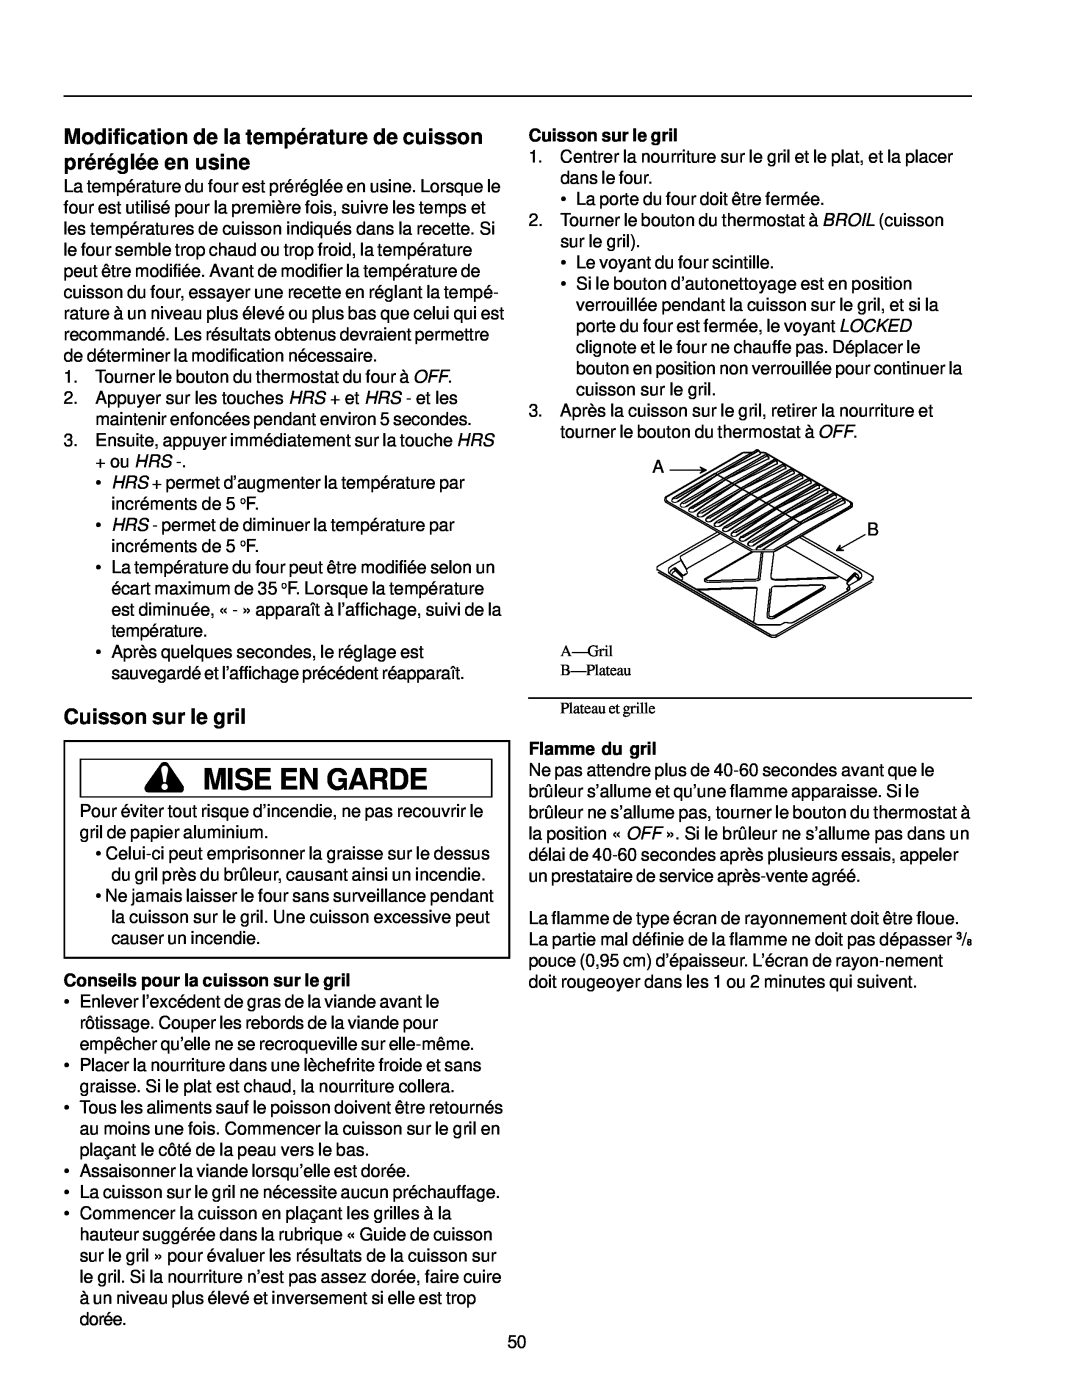 Amana ARG7302 manual Modification de la température de cuisson préréglée en usine, Cuisson sur le gril, Mise En Garde 